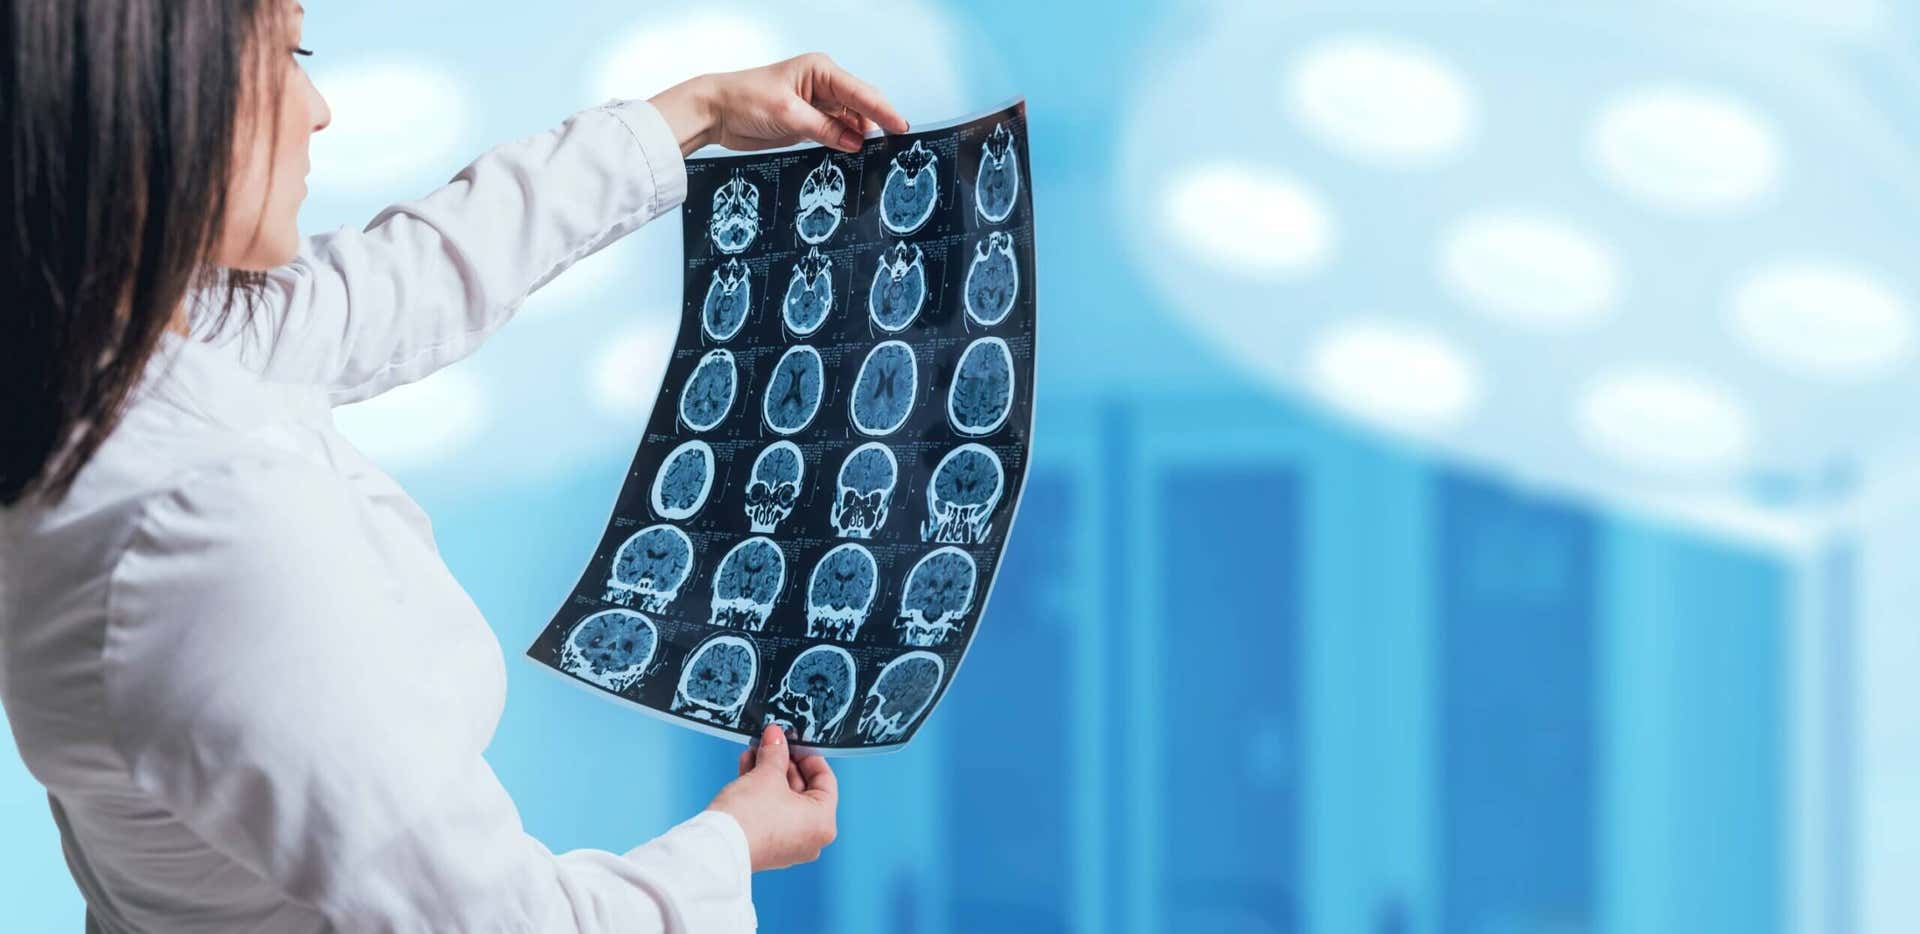 zerebrale Angiographie - Ärztin betrachtet Aufnahmen des Gehirns